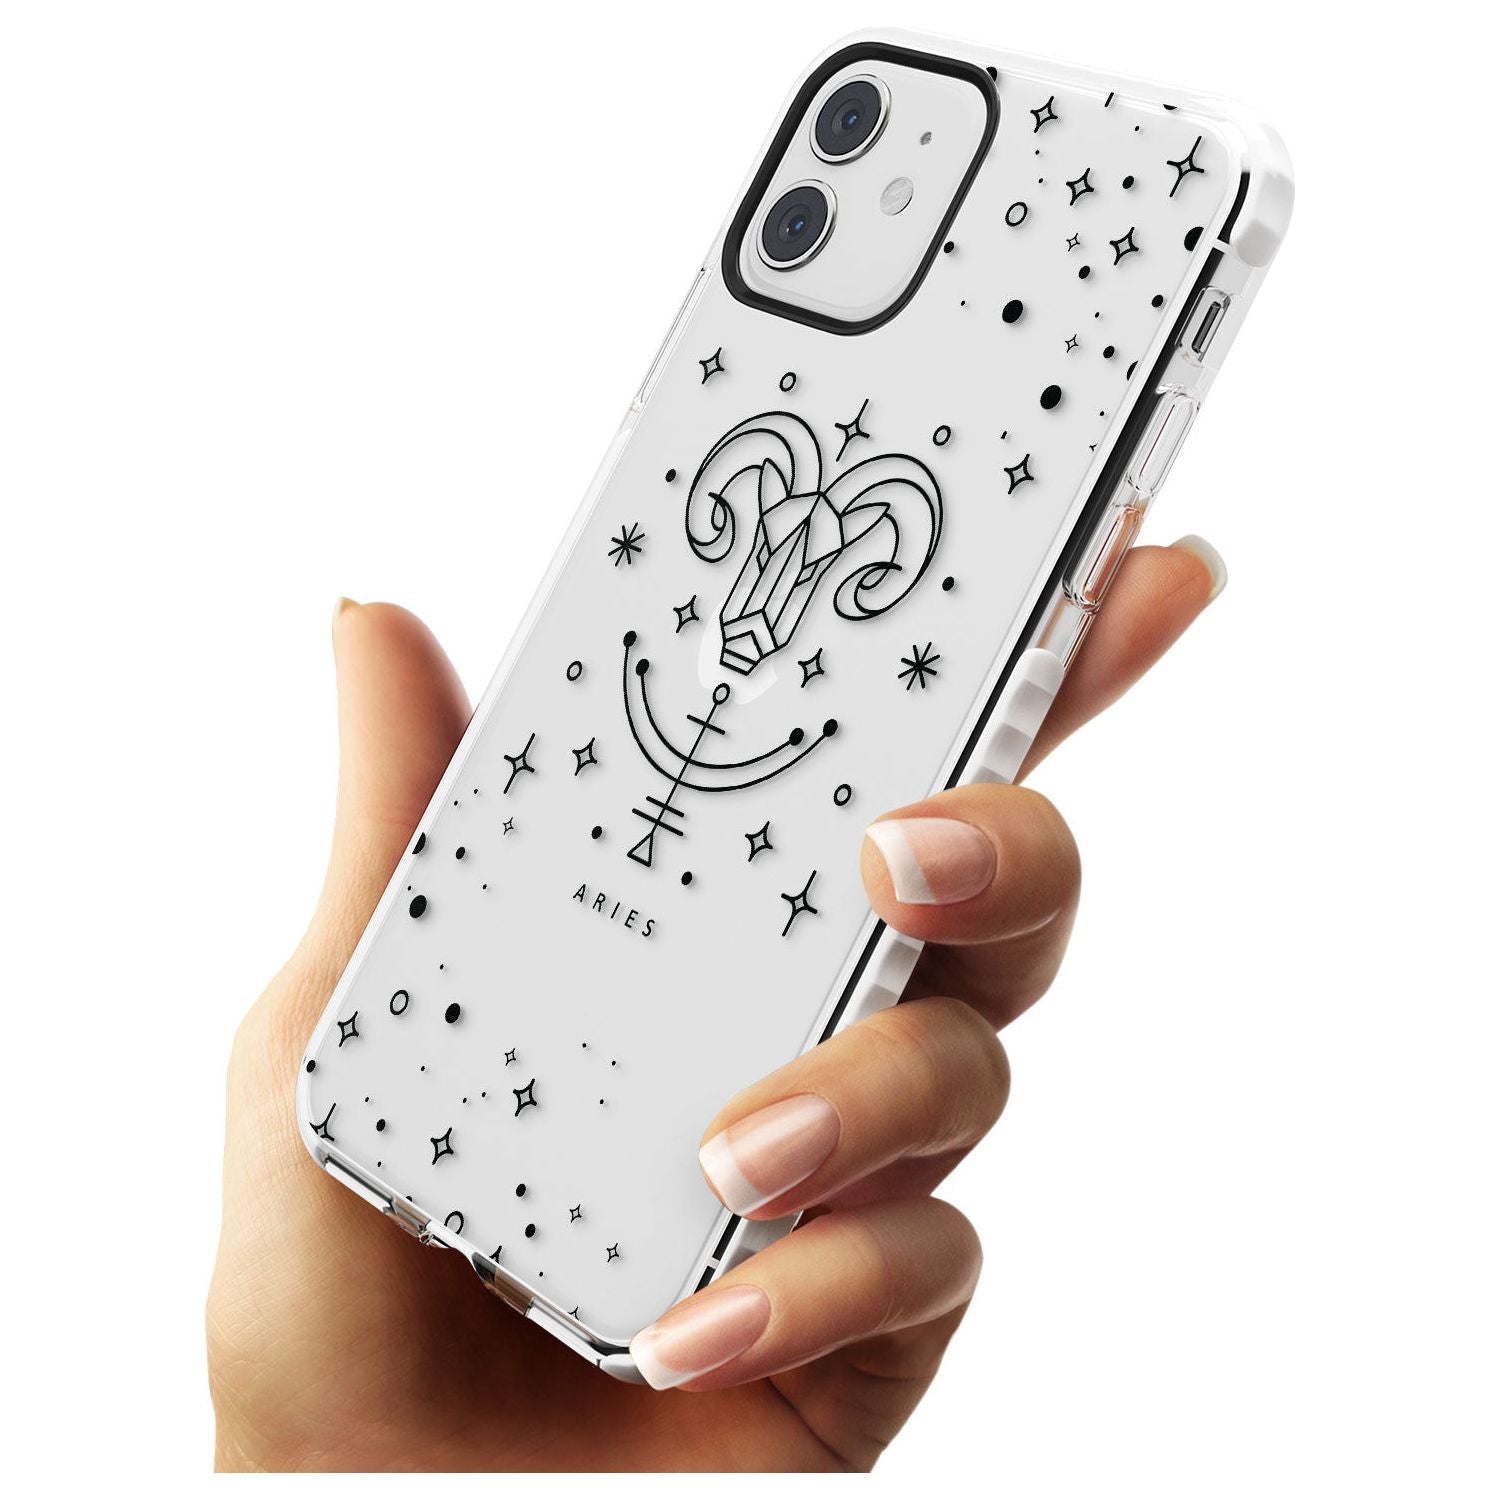 Aries Emblem - Transparent Design Impact Phone Case for iPhone 11